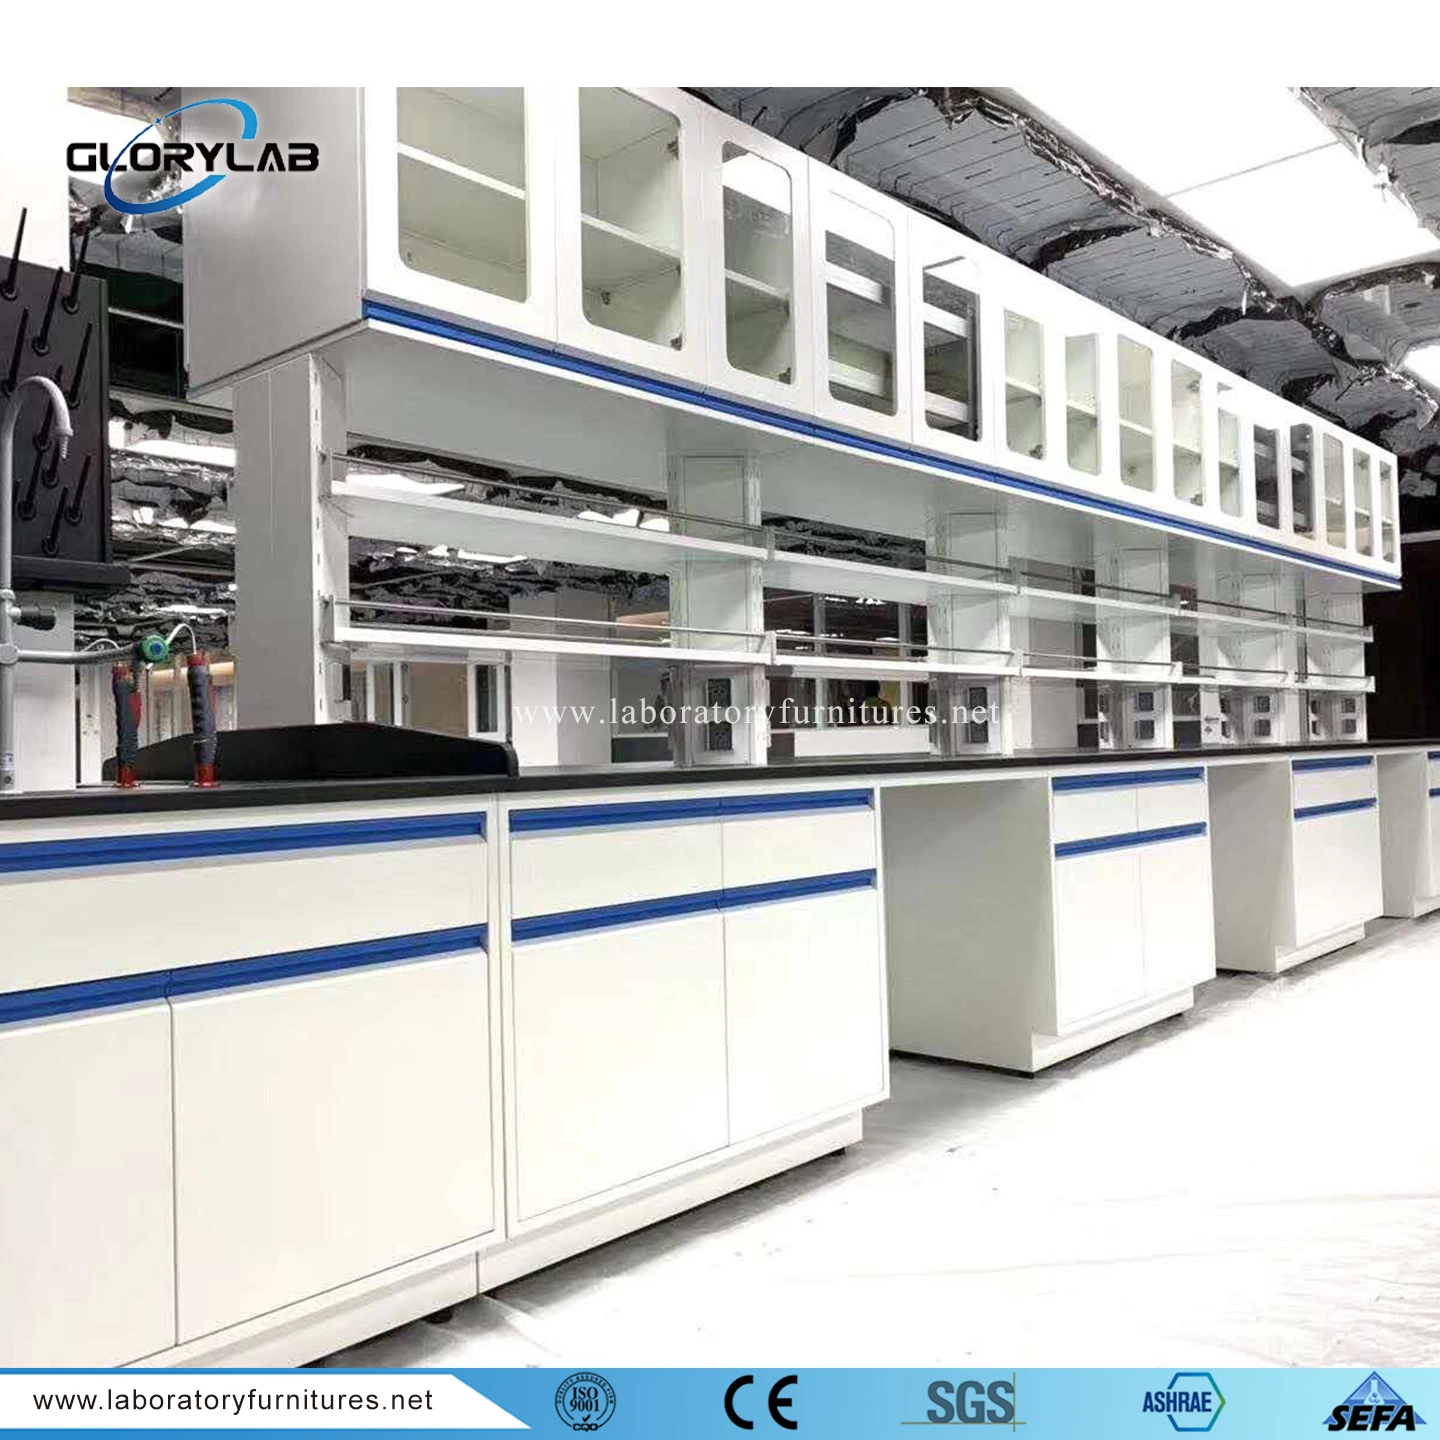 Sefa 8m-2016 Mobilier de laboratoire en acier résistant aux produits chimiques standard dans divers laboratoires.